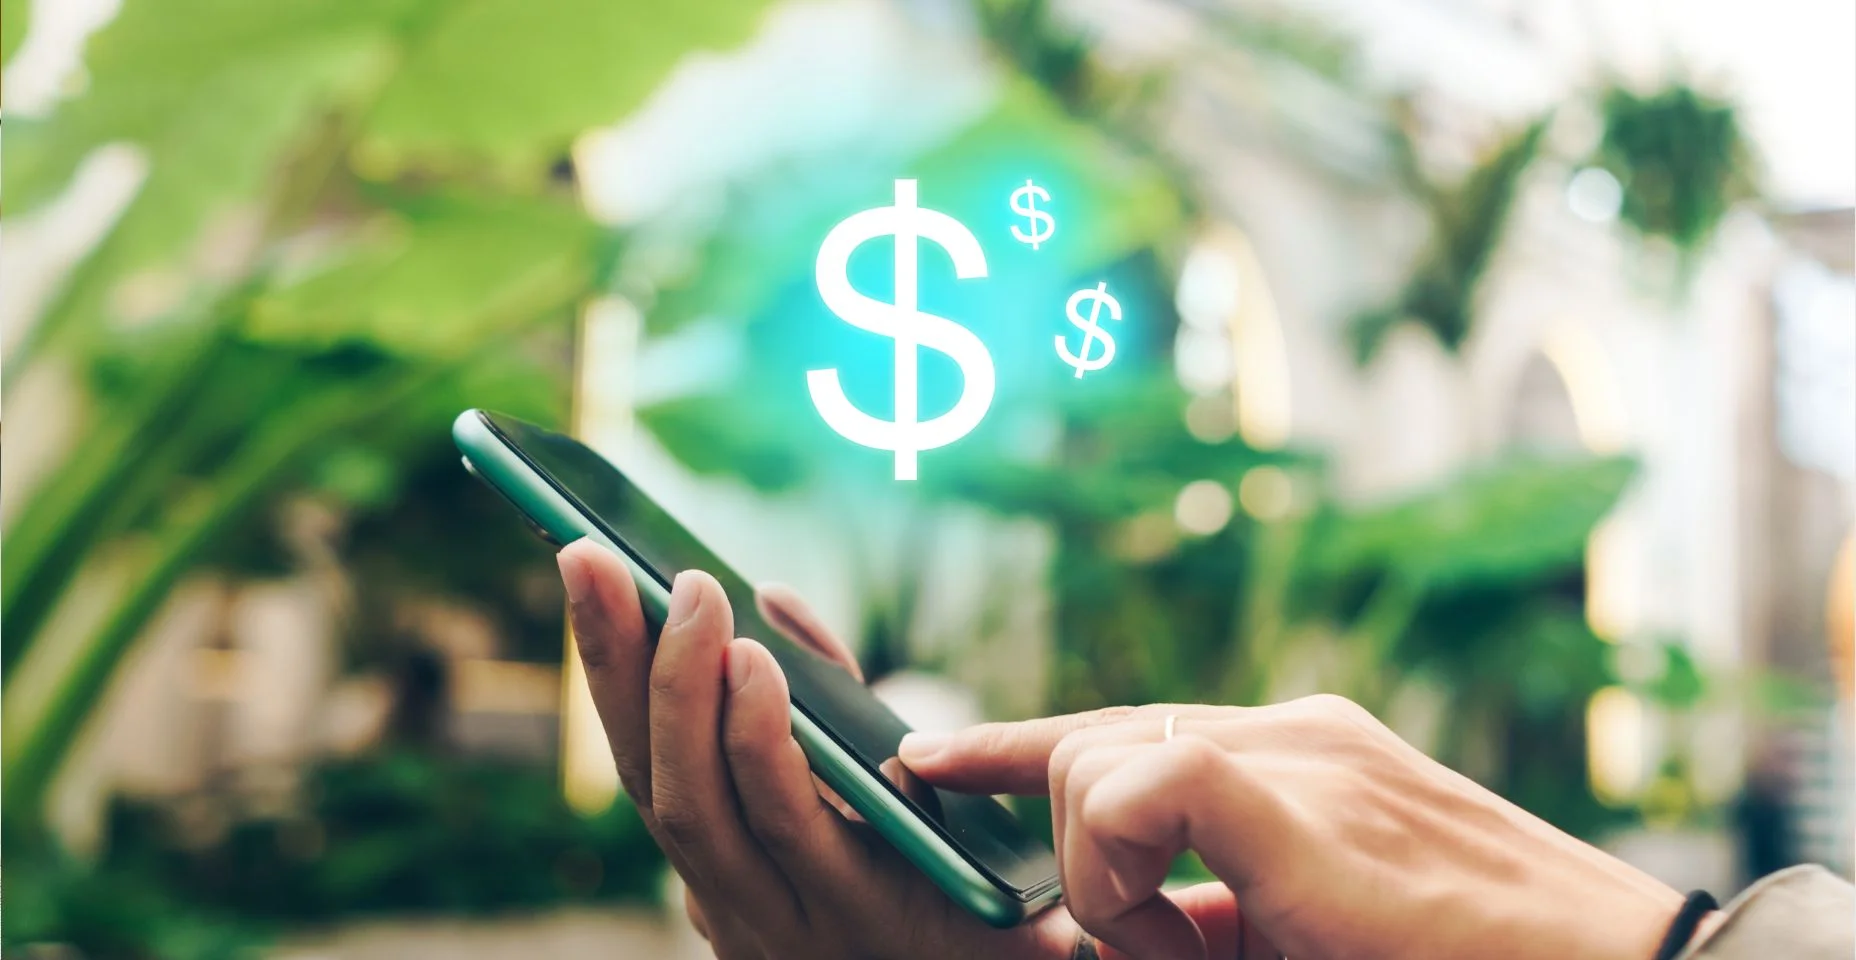 Mulher usa gadget smartphone móvel ganhar dinheiro online com ícone de dólar aparecer. Tecnologia de fintech de negócios no conceito de smartphone.